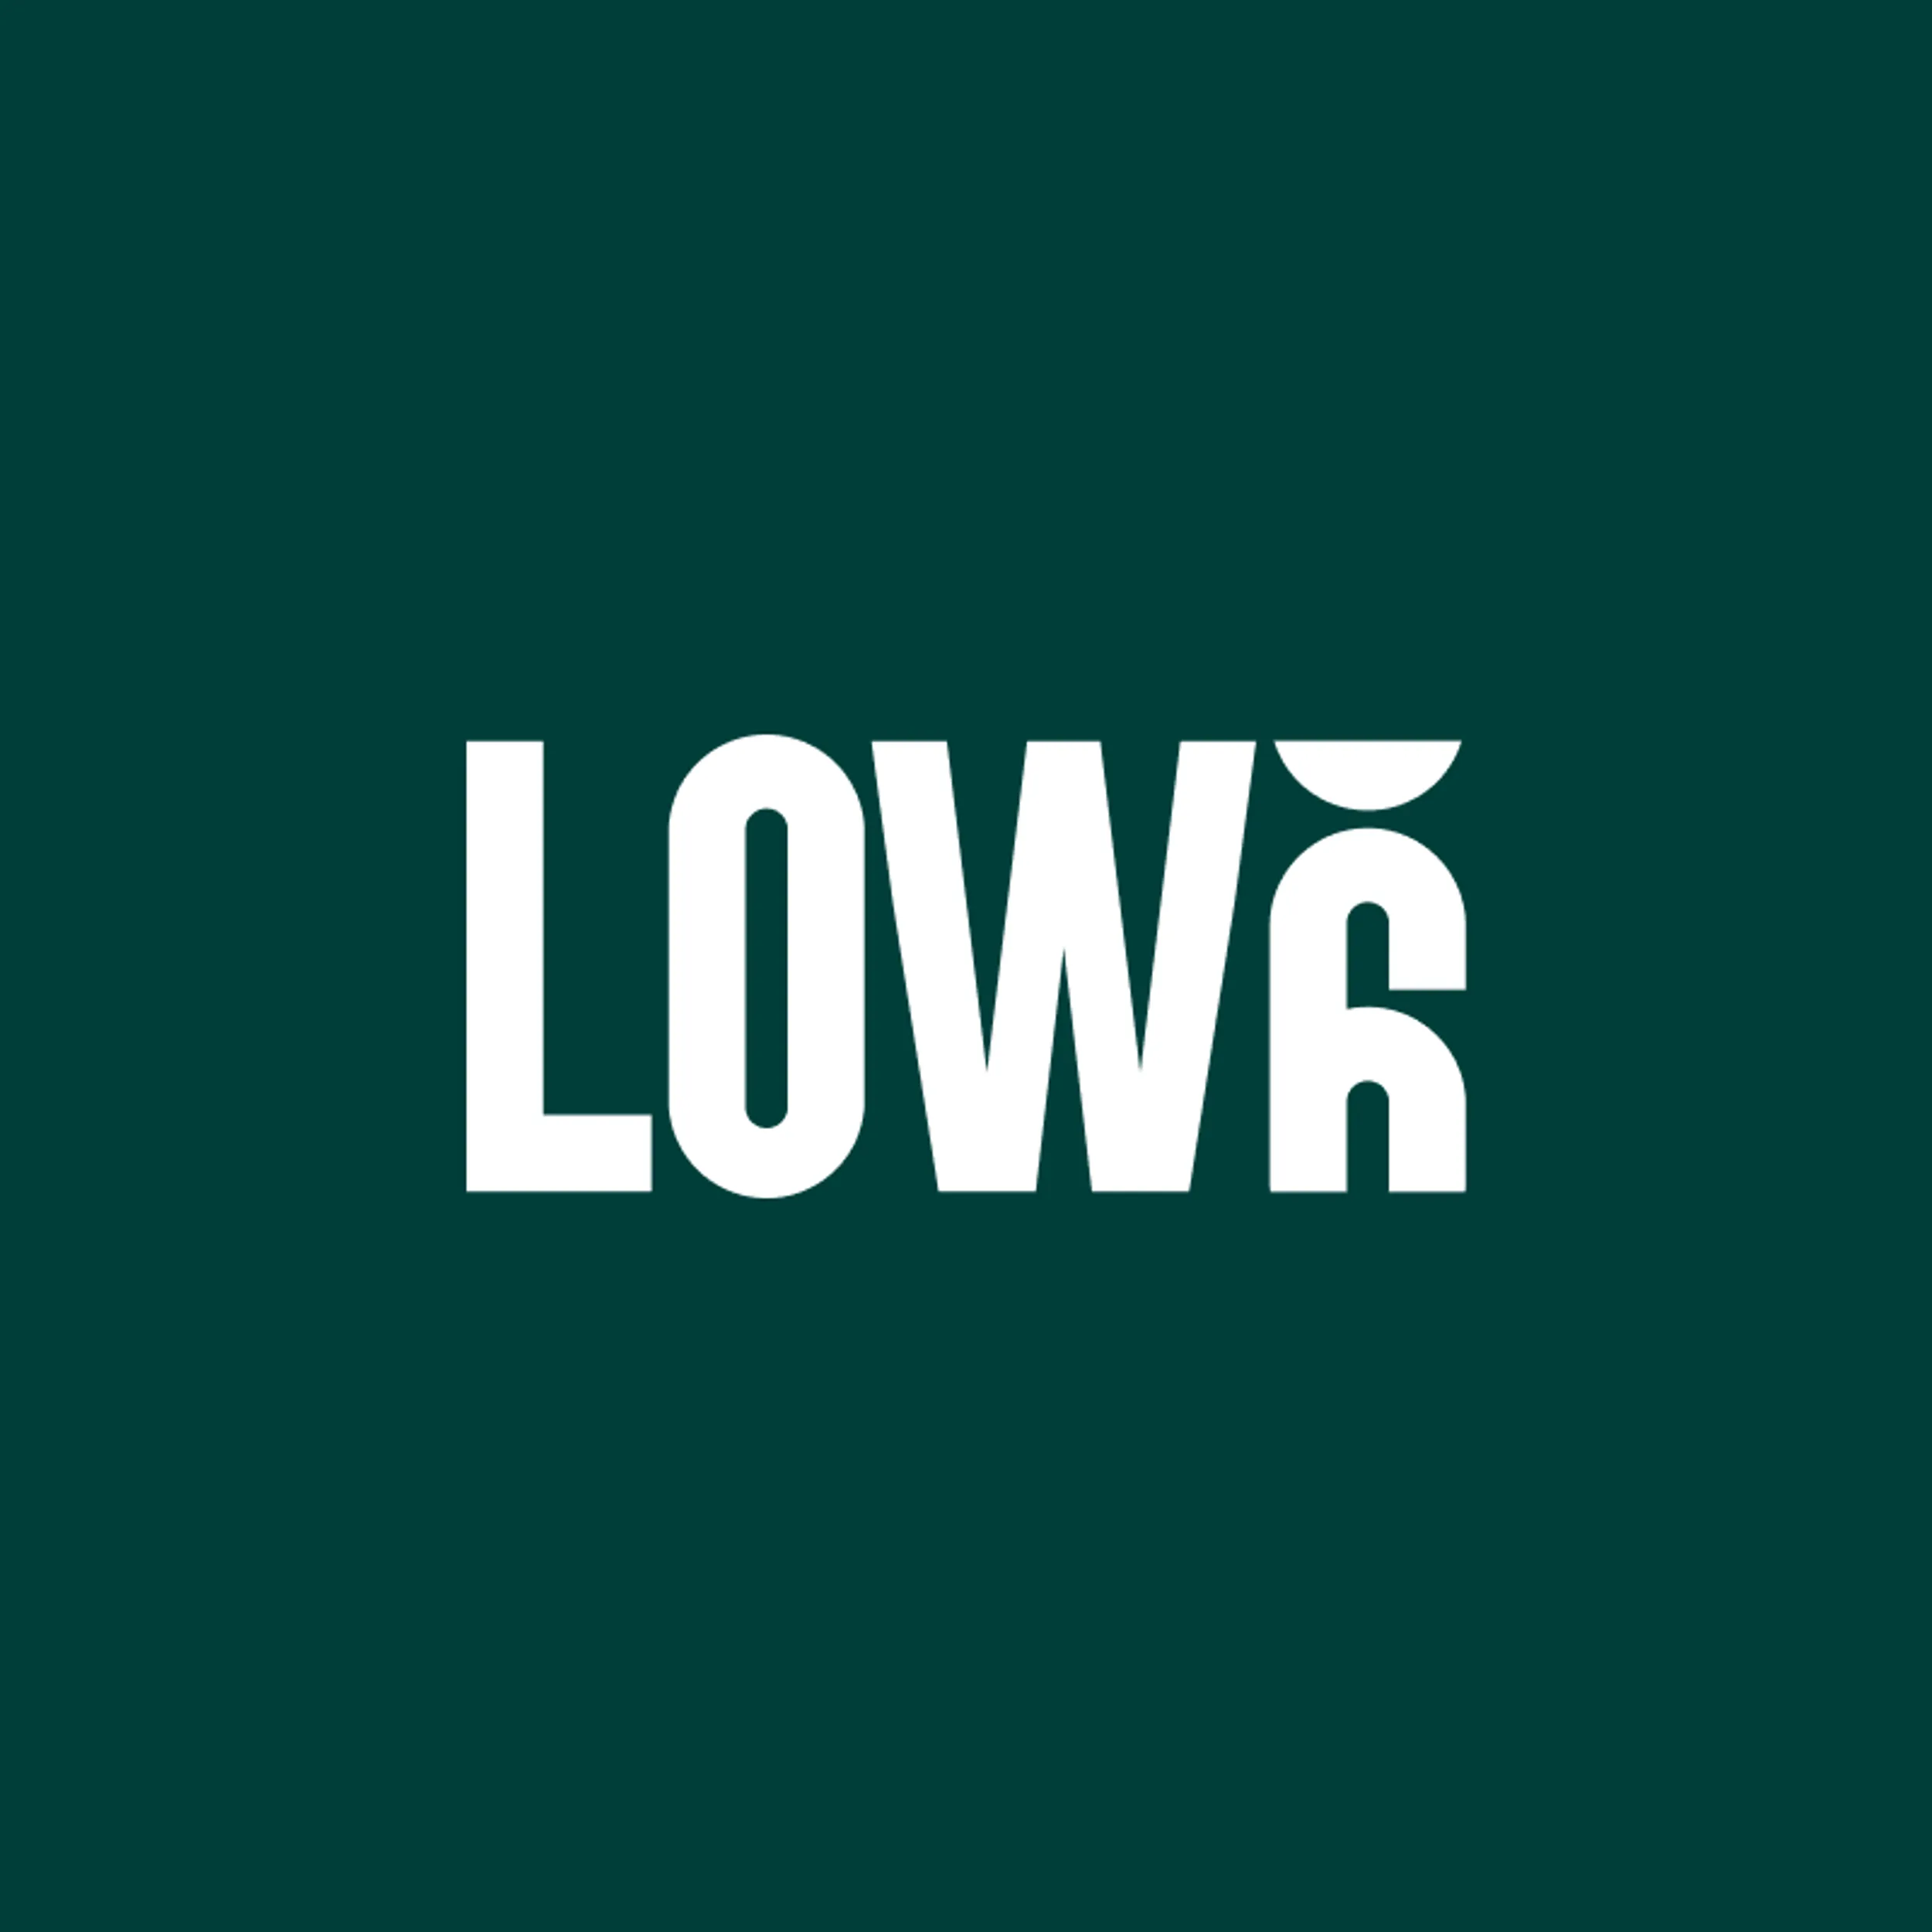 Low6 logo green bg